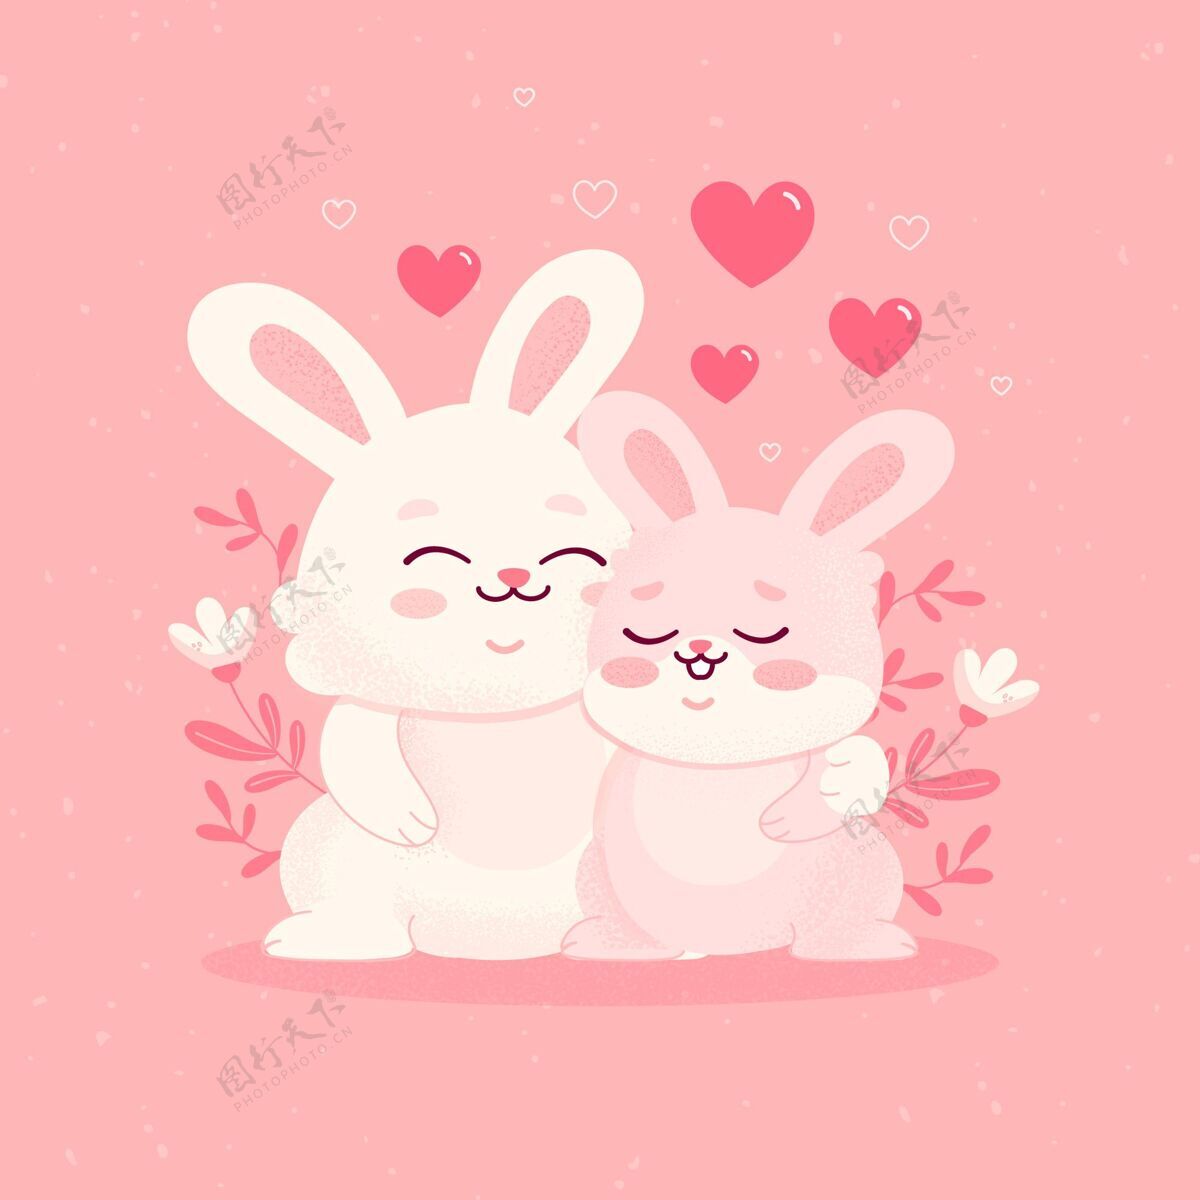 2月14日可爱的情人节兔子情侣浪漫浪漫情人节